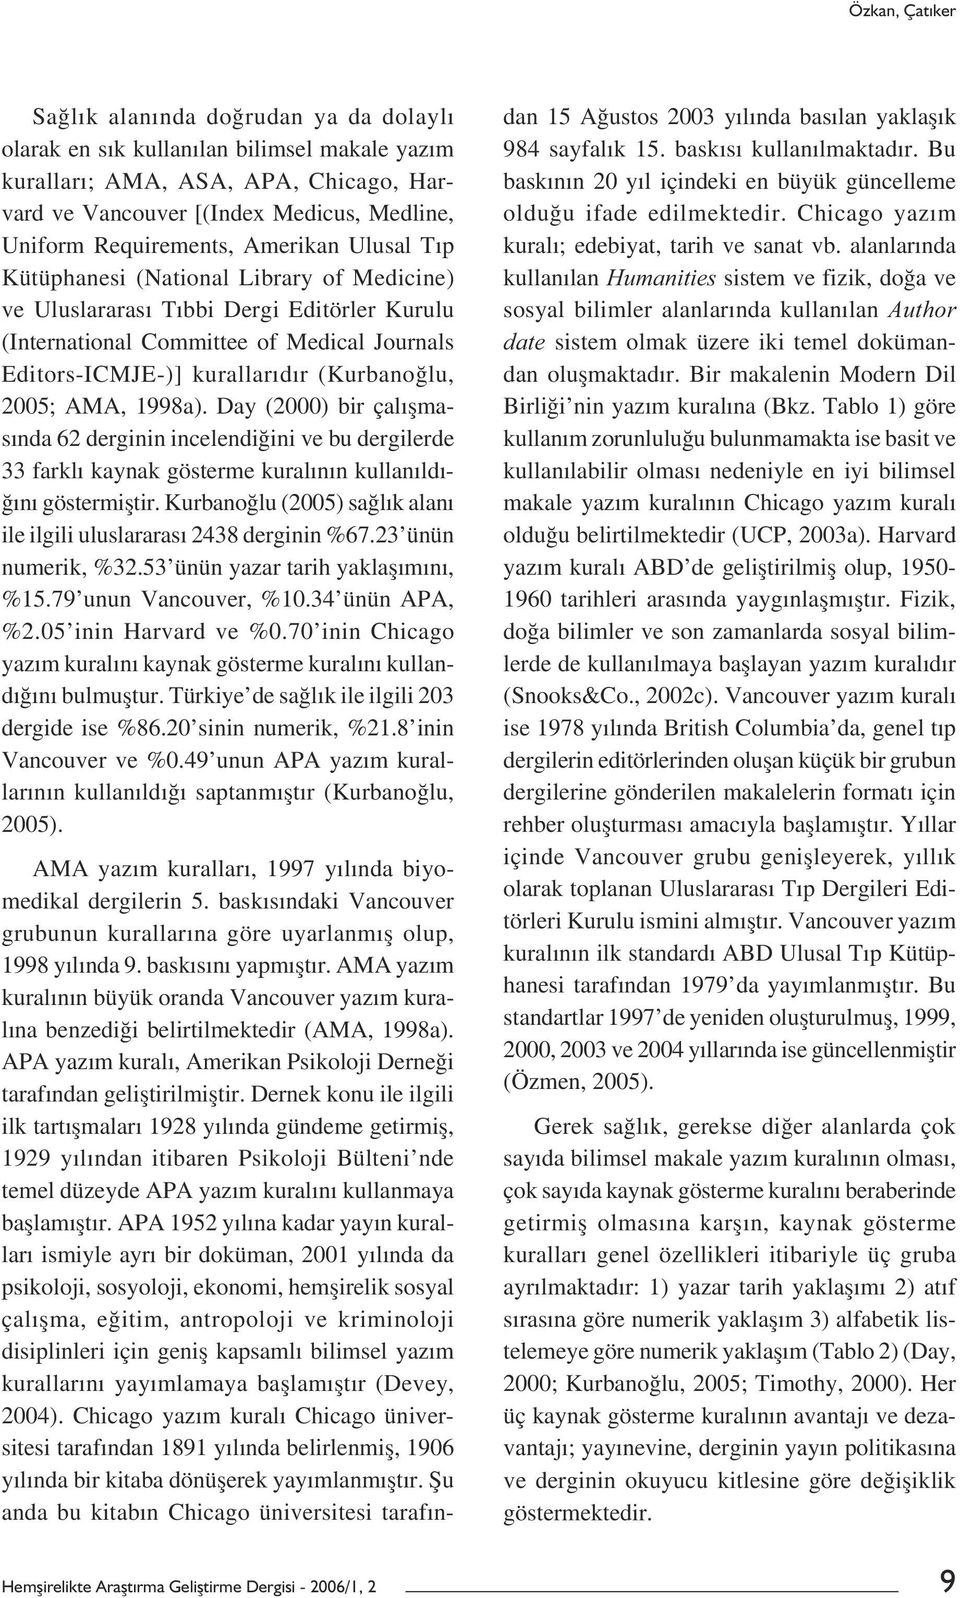 (Kurbanoğlu, 2005; AMA, 1998a). Day (2000) bir çalıșmasında 62 derginin incelendiğini ve bu dergilerde 33 farklı kaynak gösterme kuralının kullanıldığını göstermiștir.